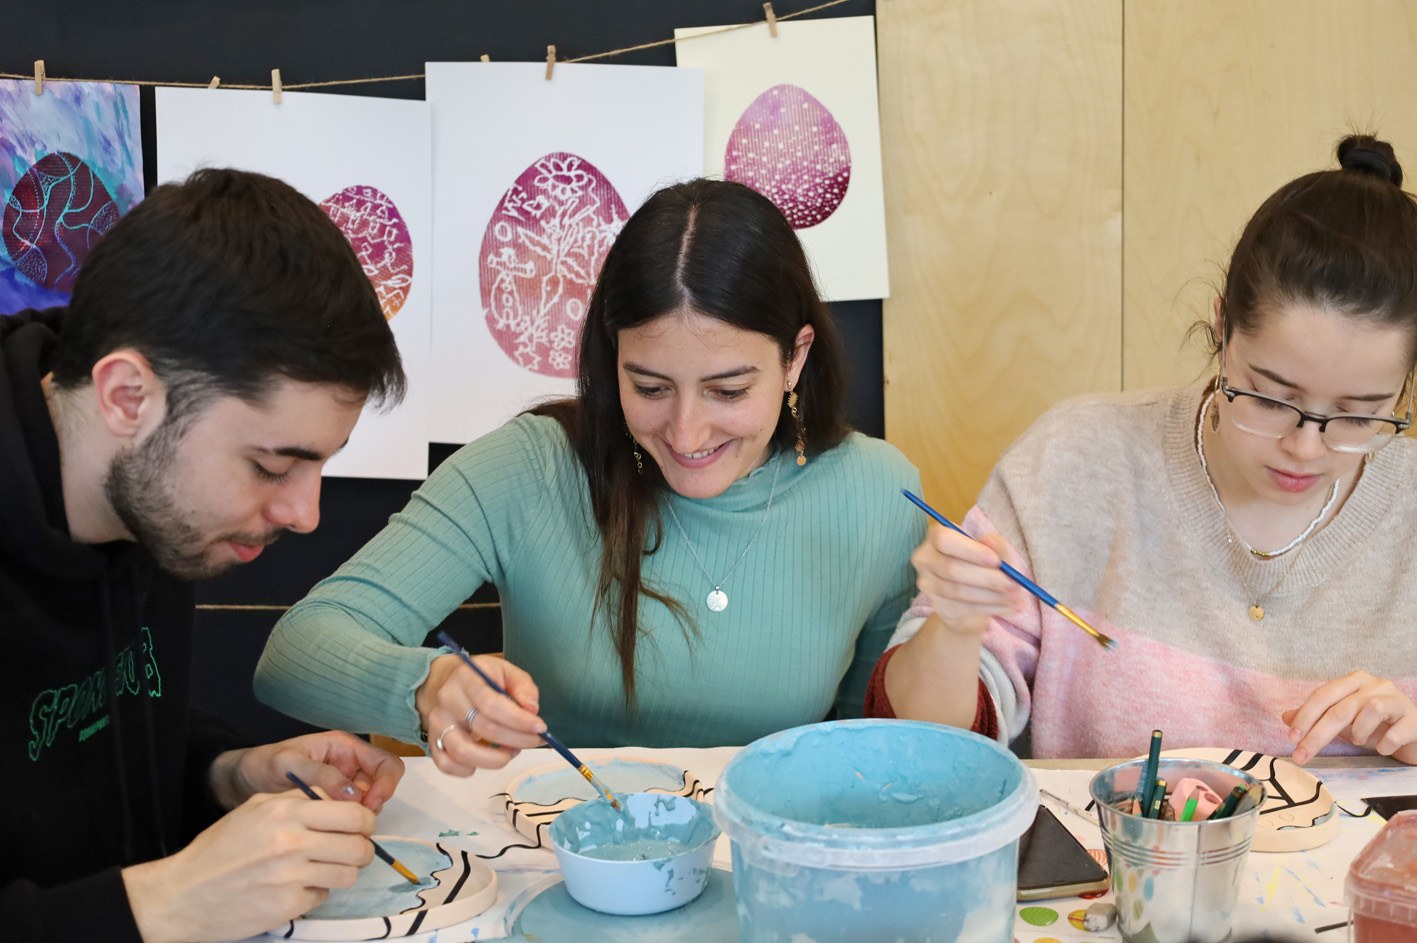 studenci siedzą wokół stołu warsztatowego i malują ceramiczne miseczki.